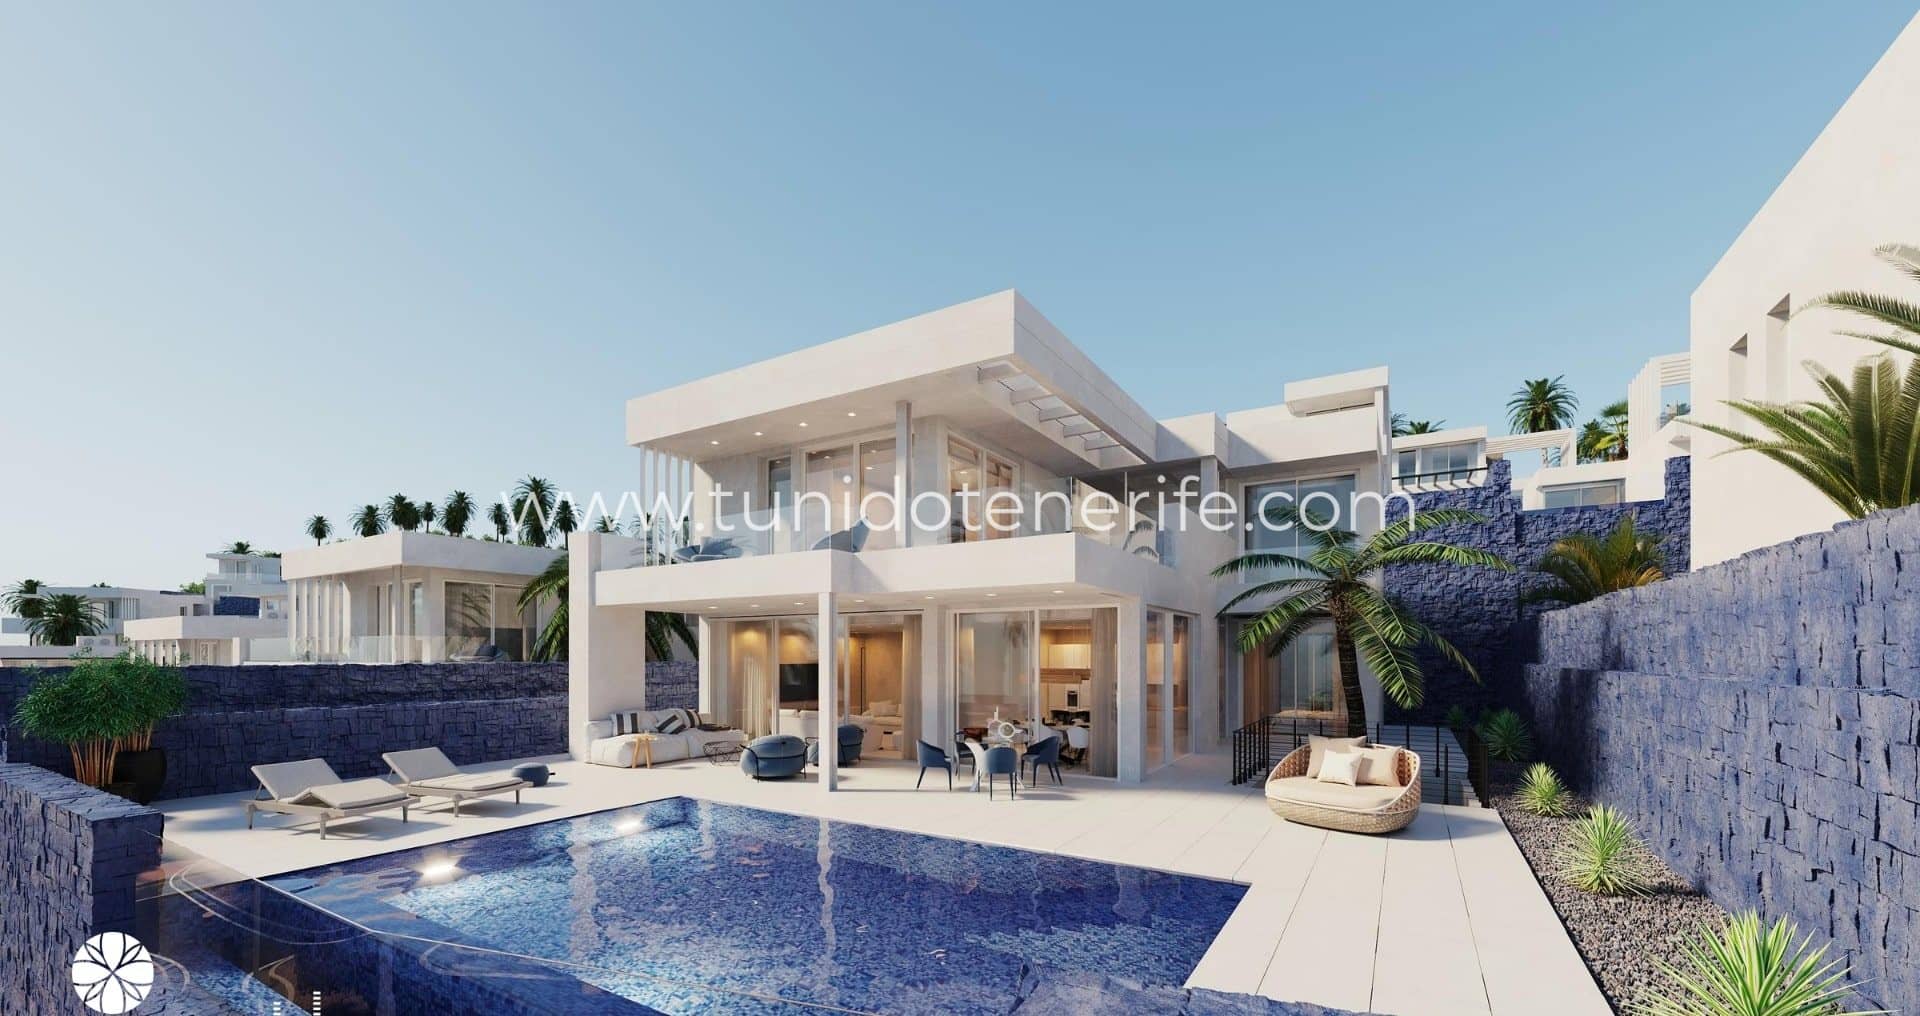 Villas de luxe à vendre, Sud Ténérife, Tu Nido Tenerife